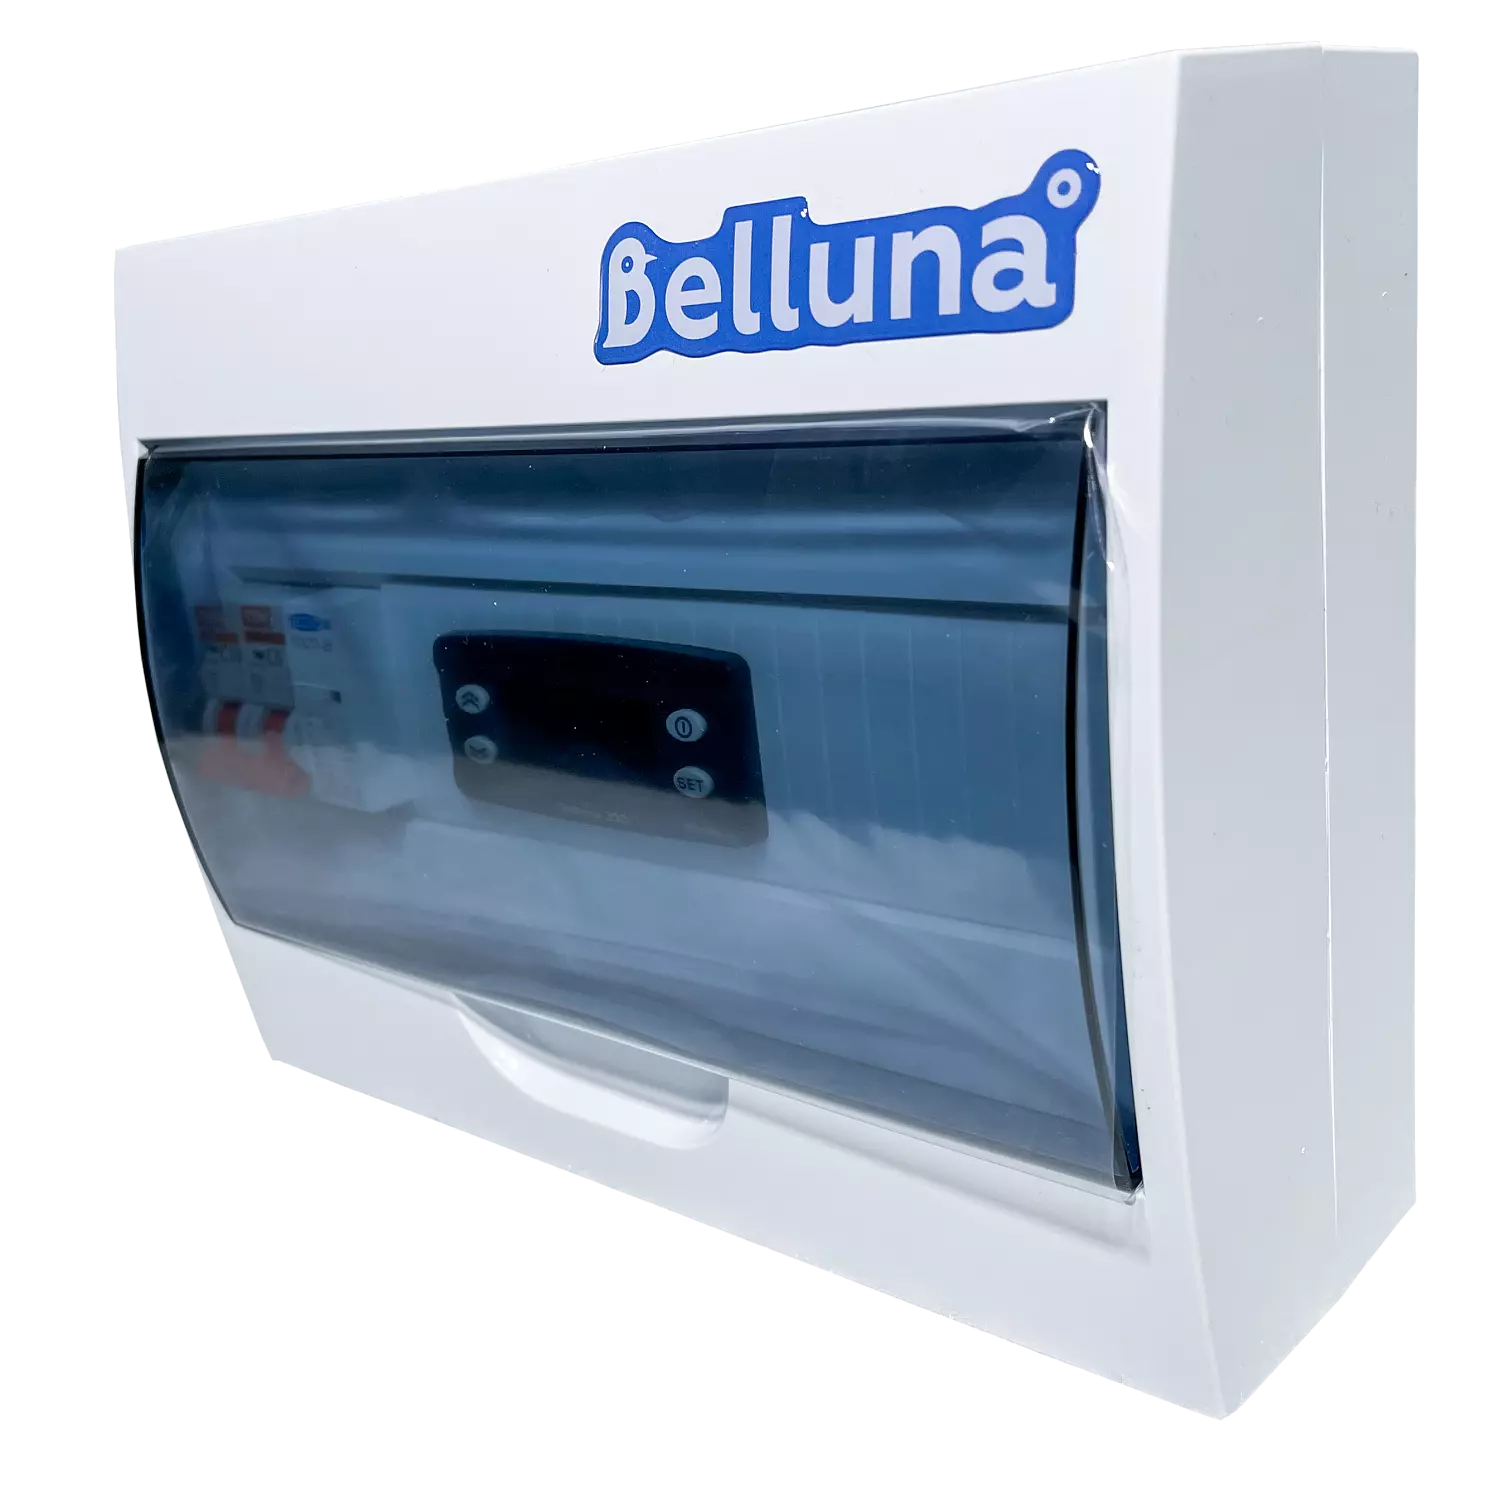 сплит-система Belluna S342 Уфа